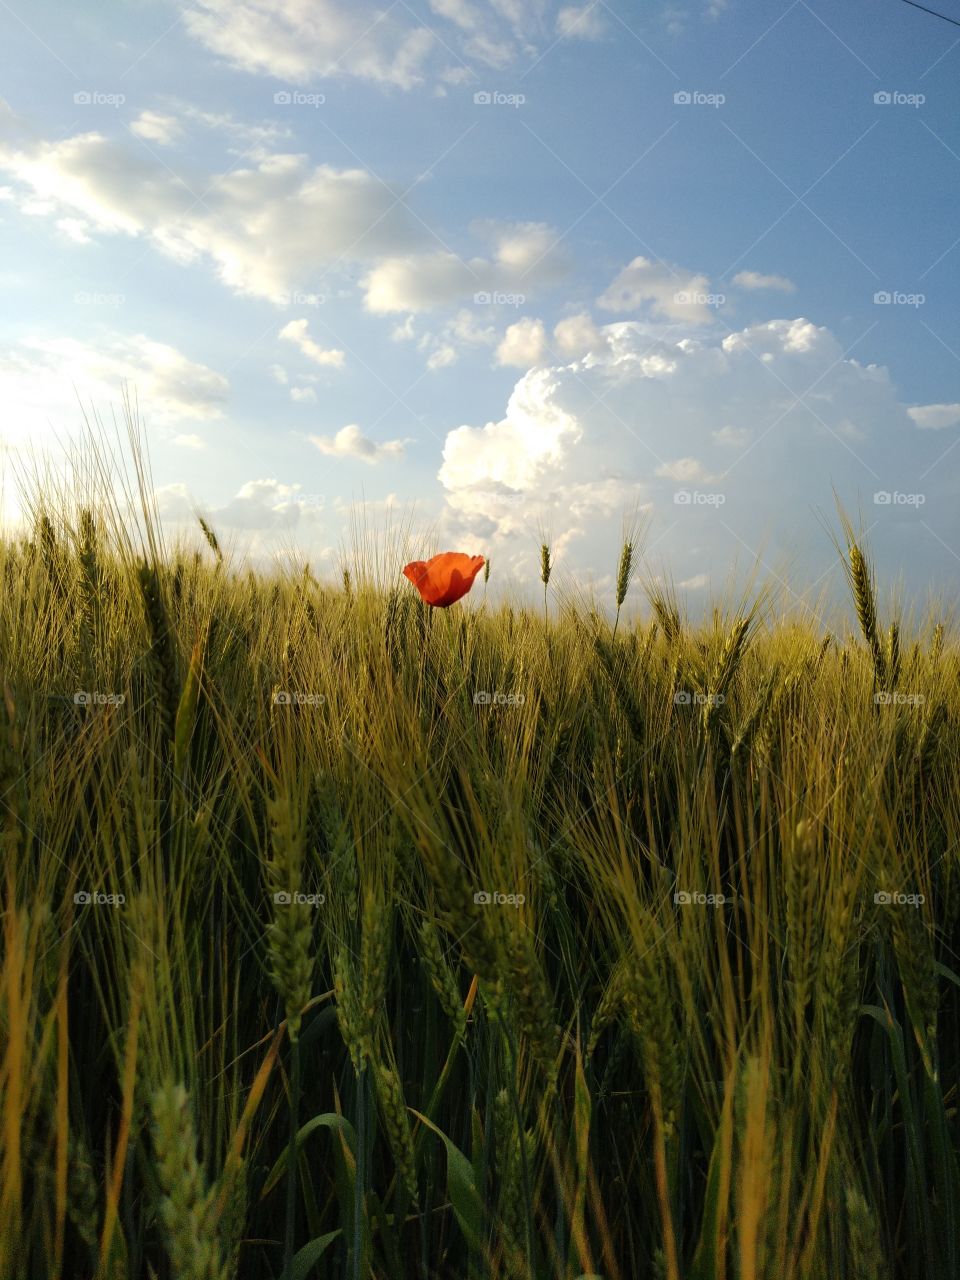 summer, poppy in wheat, poppies, sky, wheat field